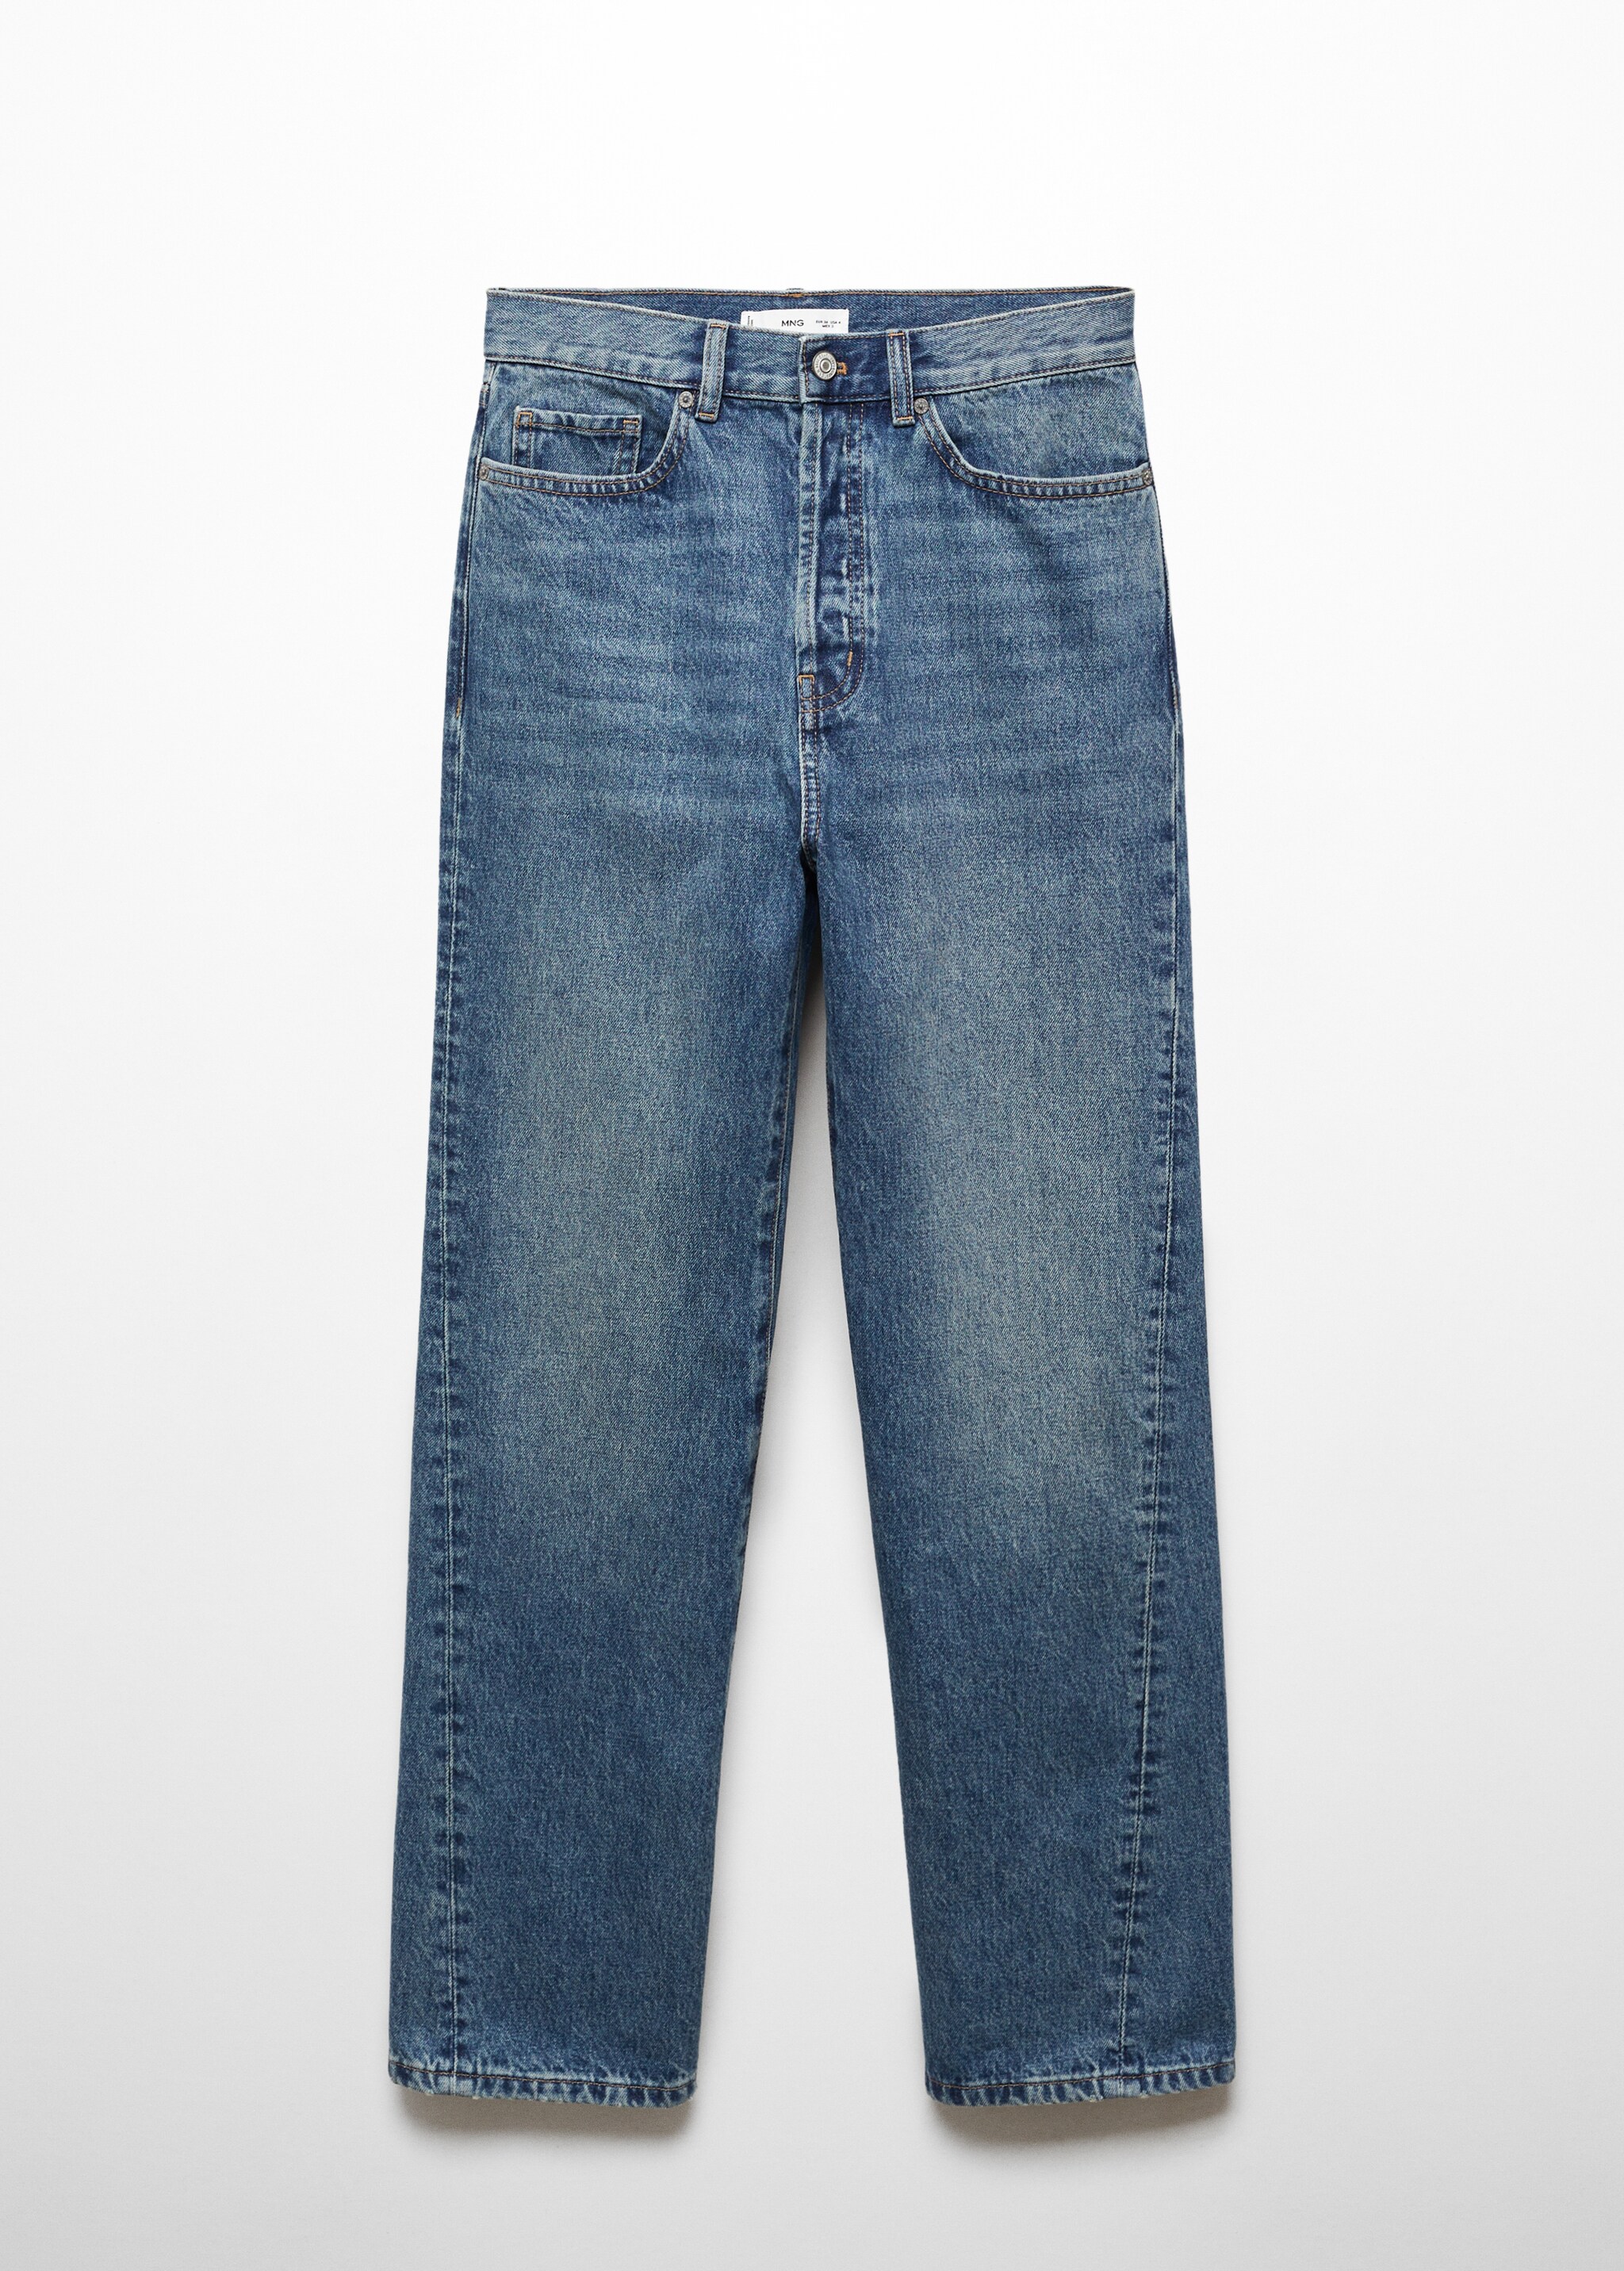 Прямые джинсы с диагональными швами - Изделие без модели